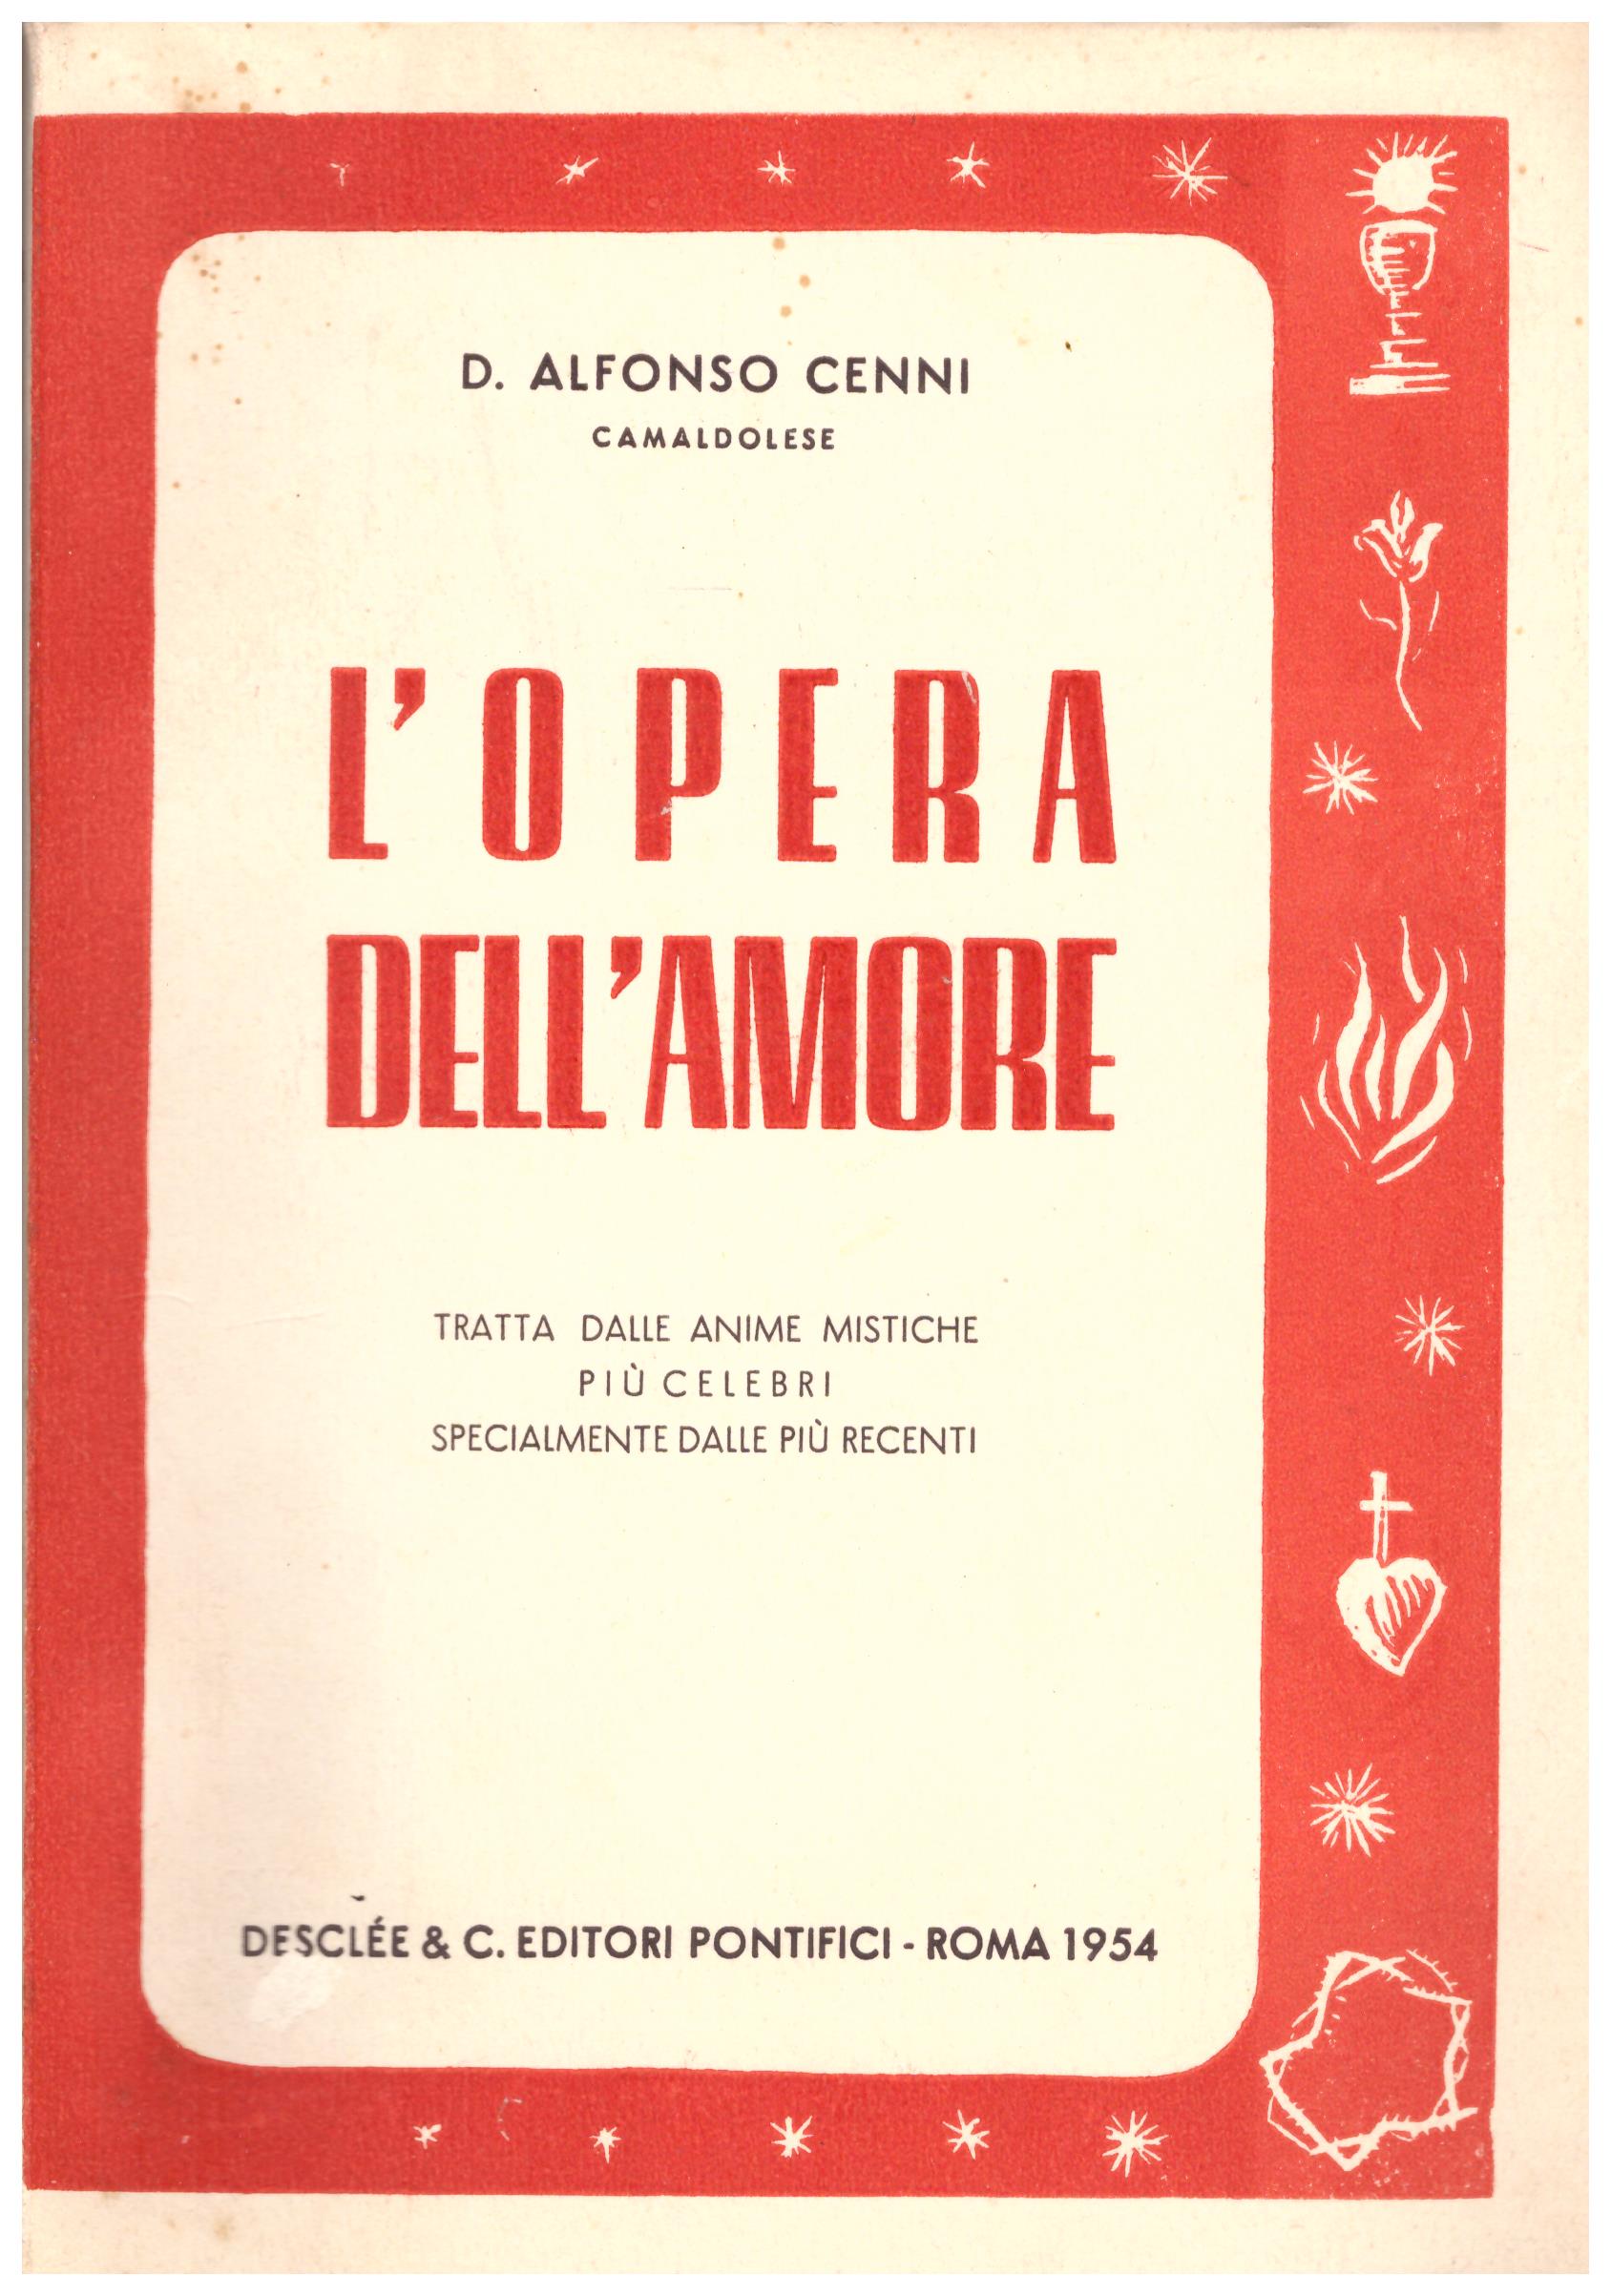 Titolo: L'opera dell'amore  Autore: D. Alfonso Cenni  Editore: Desclee e C. editori pontifici, Roma 1954